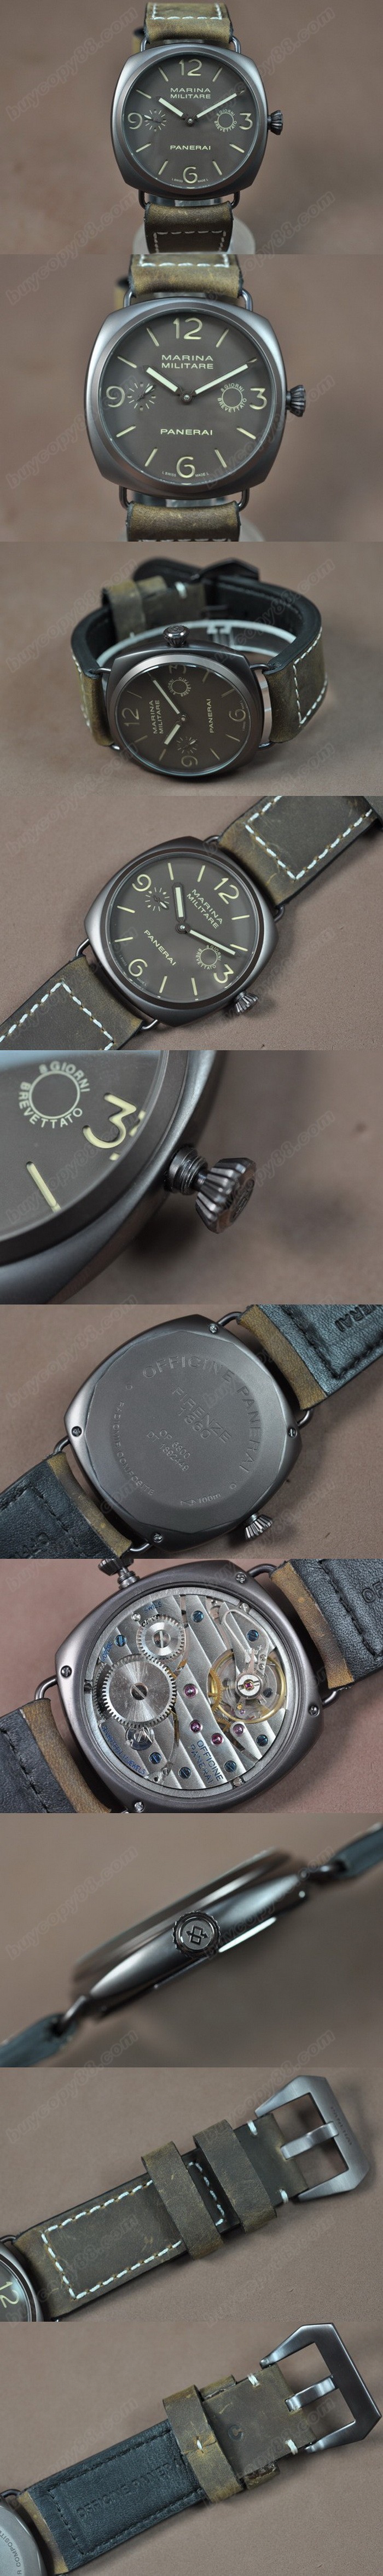  沛納海 Watches Luminor Marina 47mm 咖啡色 case A-6497 Handwind   0